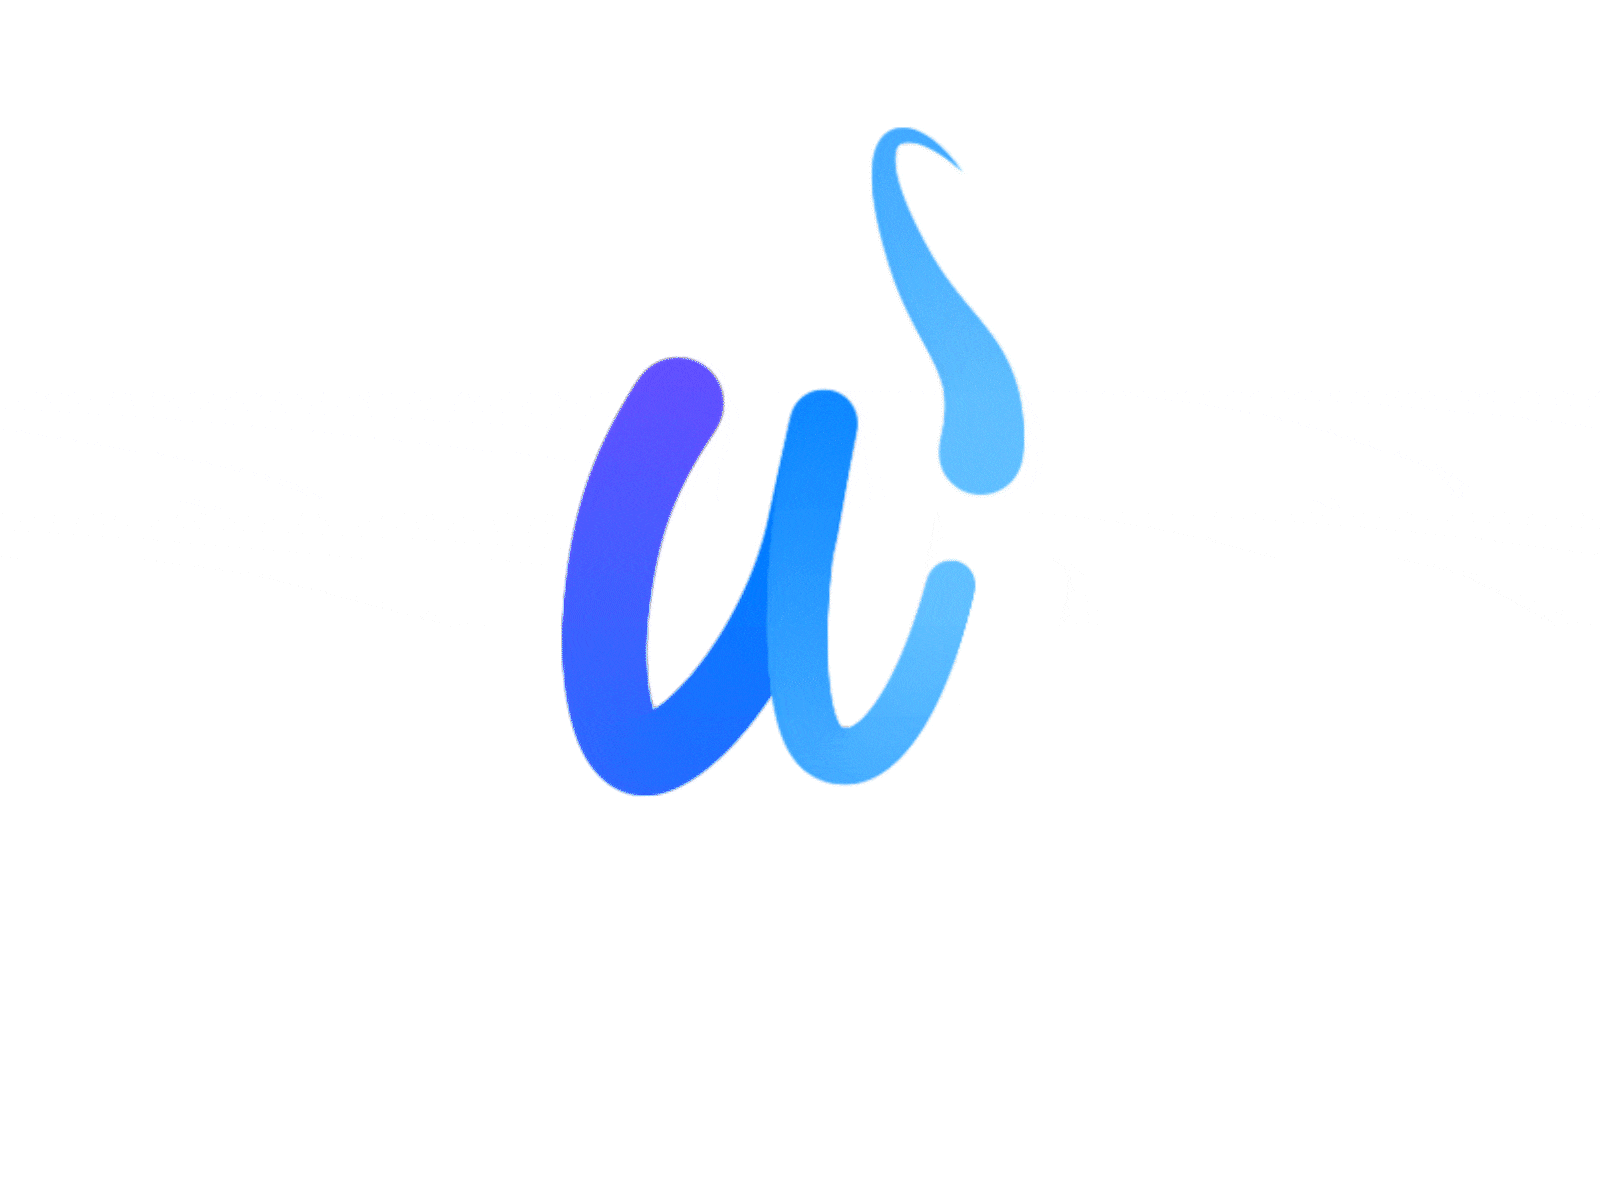 Typographic logo